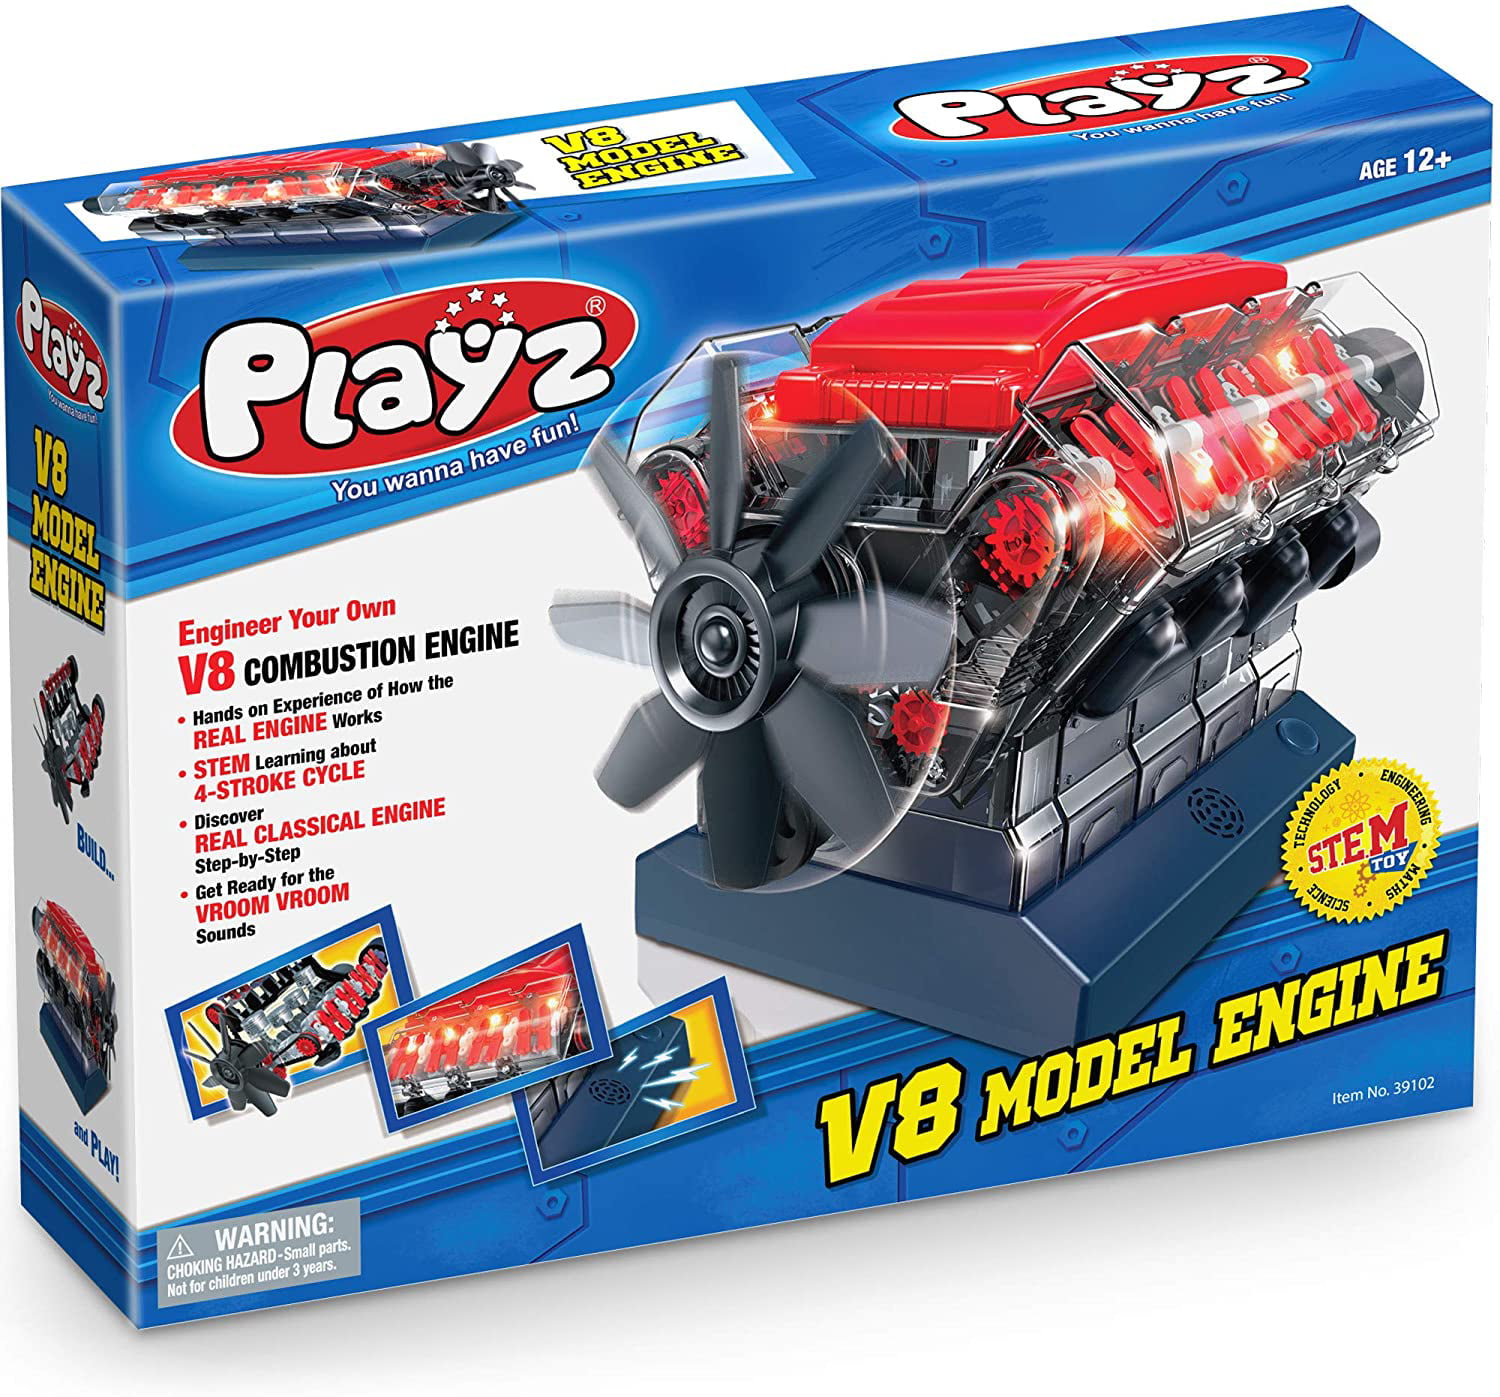 Playz V8 Combustion Engine Model Building Toy Kit for sale online 